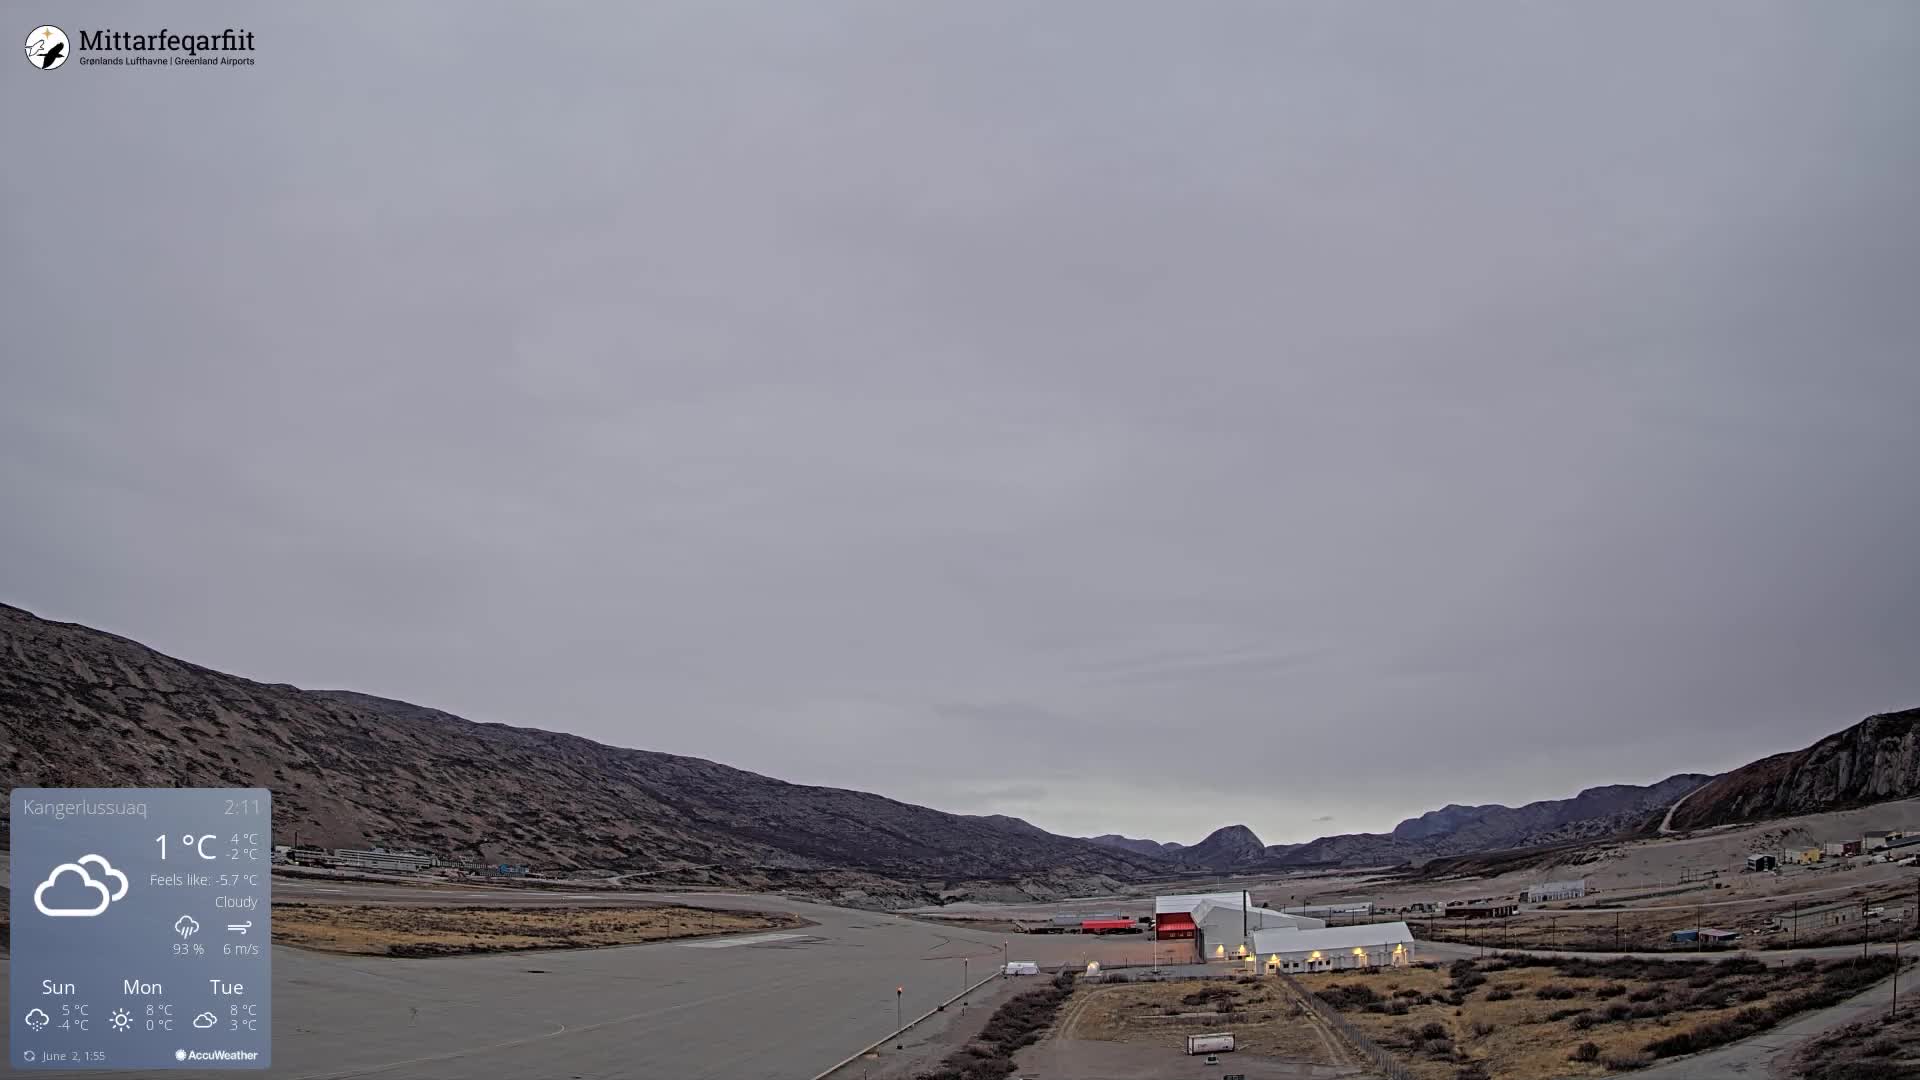 Kangerlussuaq Man. 02:34